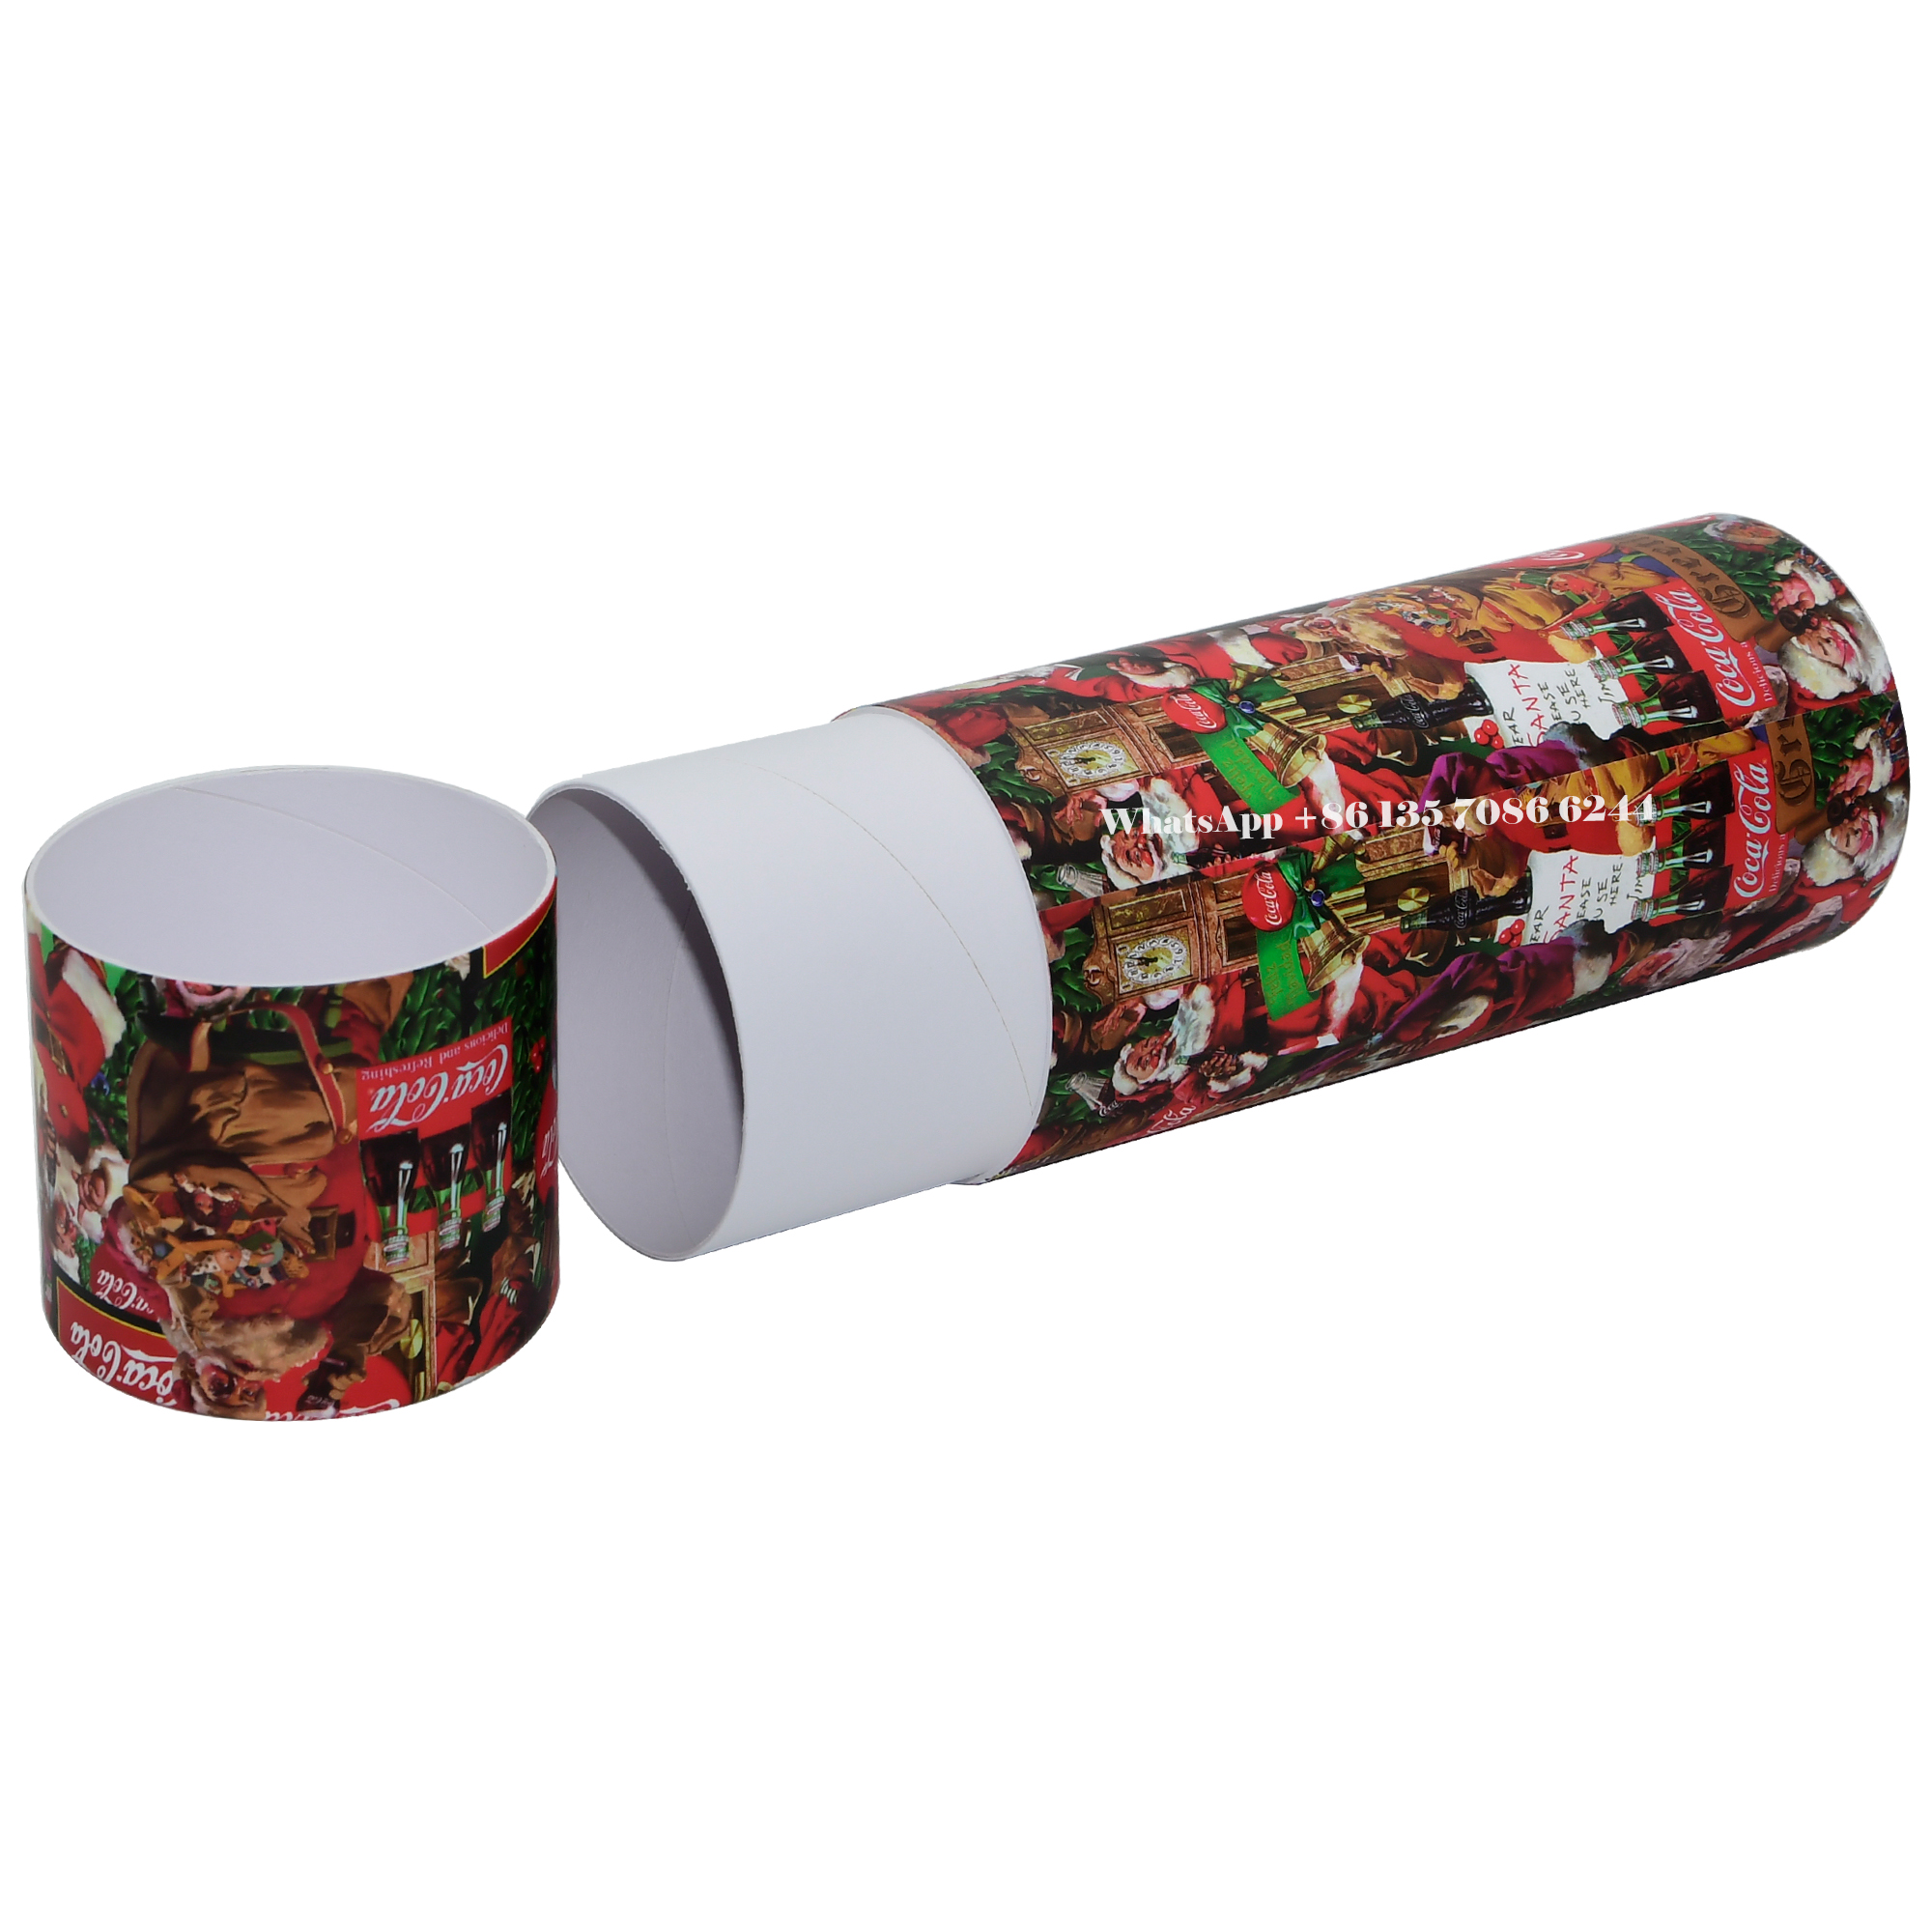  Caixa de embalagem em tubo de papel Coca-Cola Edição Festiva de Natal  